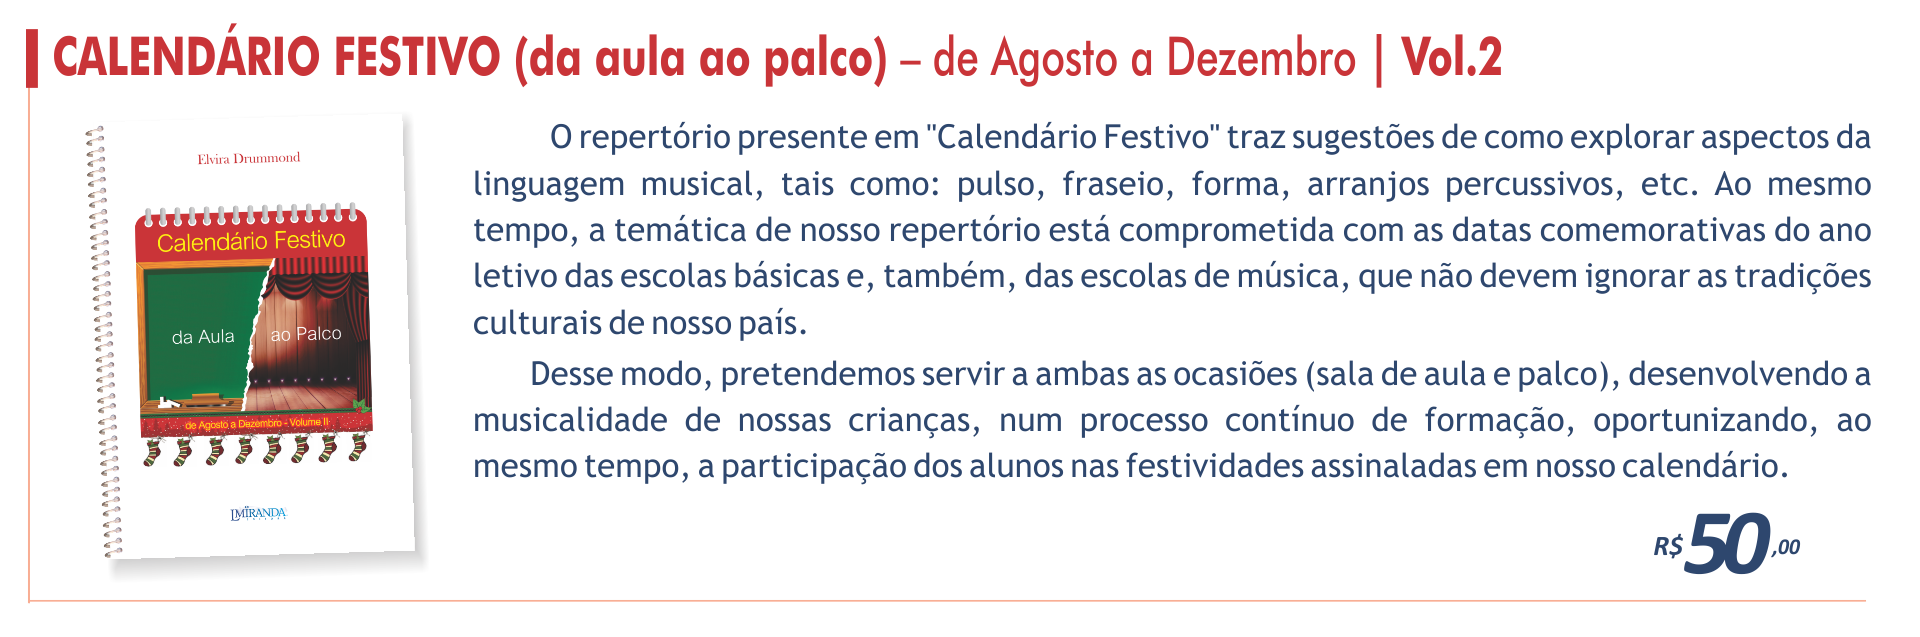 Calendário Festivo vol.2 - De Agosto a Dezembro